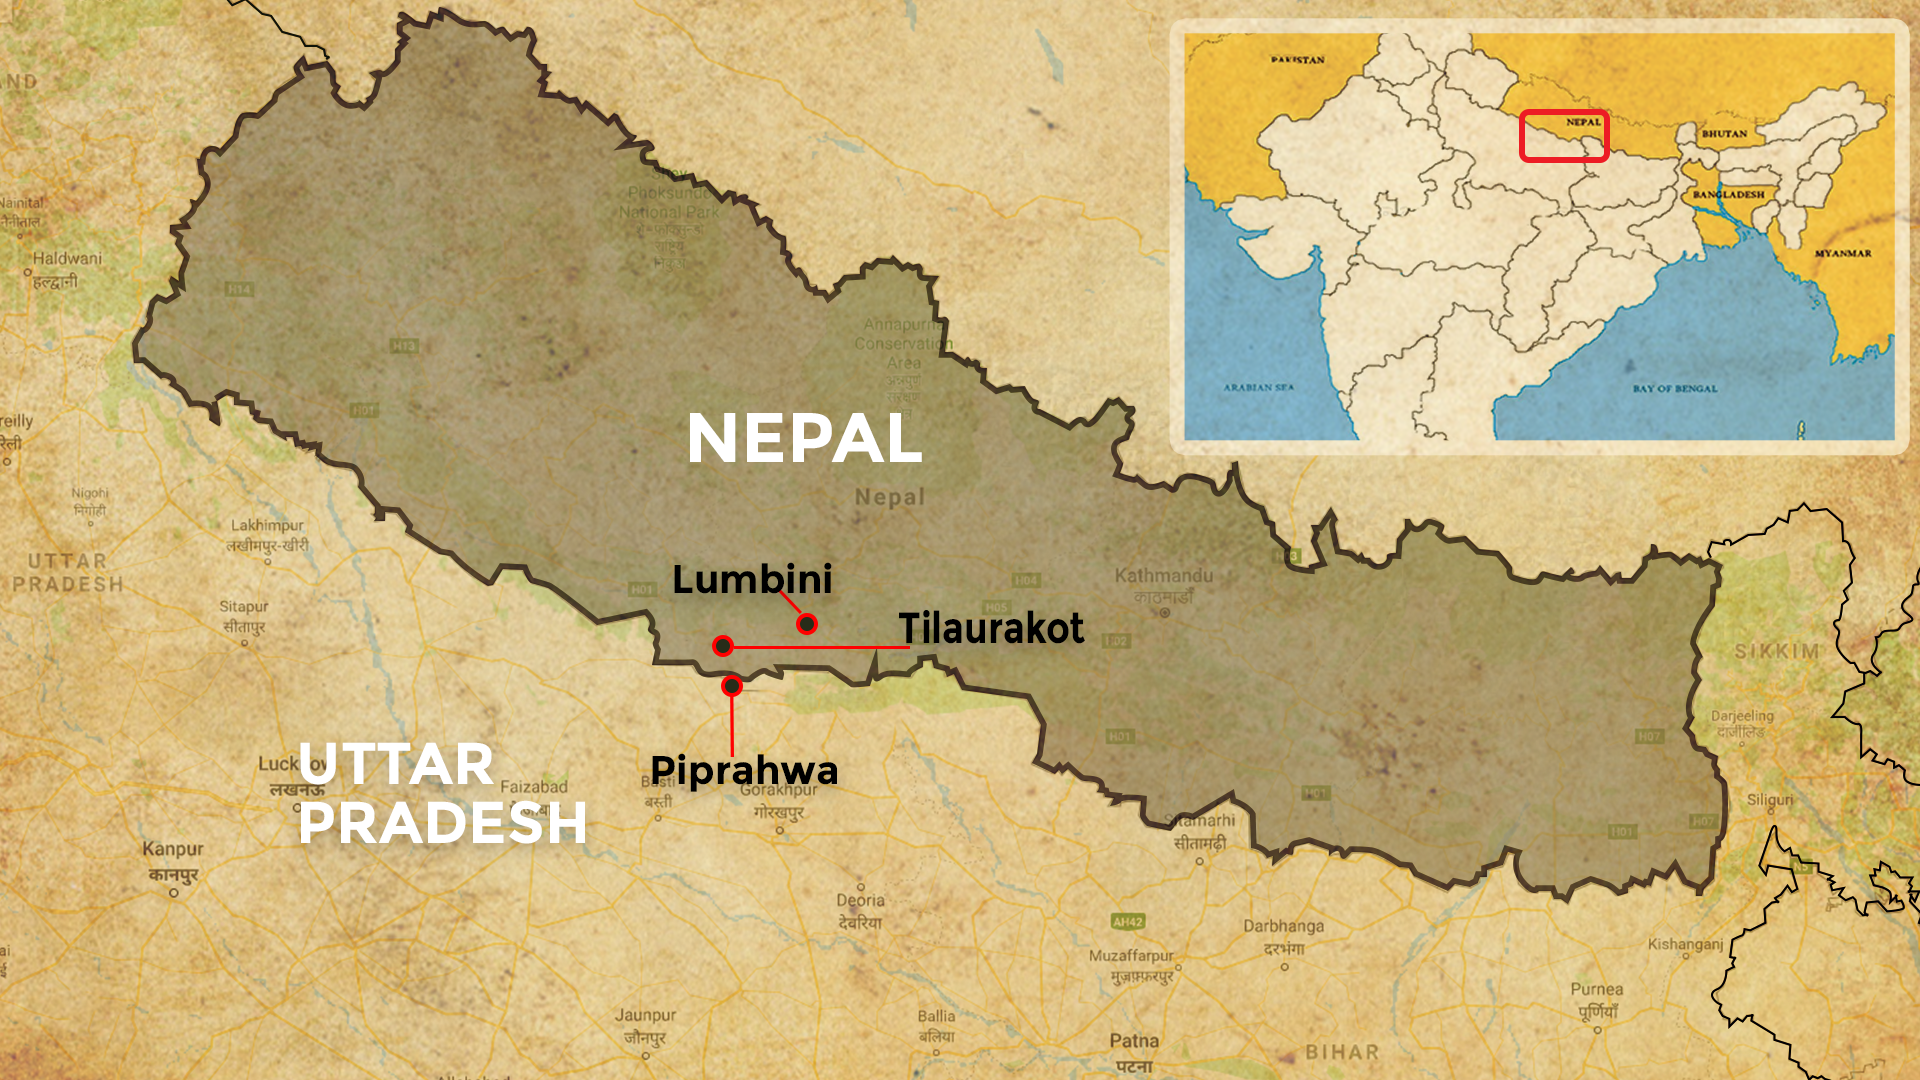 Indo-Nepal map showing Lumbini, Tilaurakot and Piprahwa